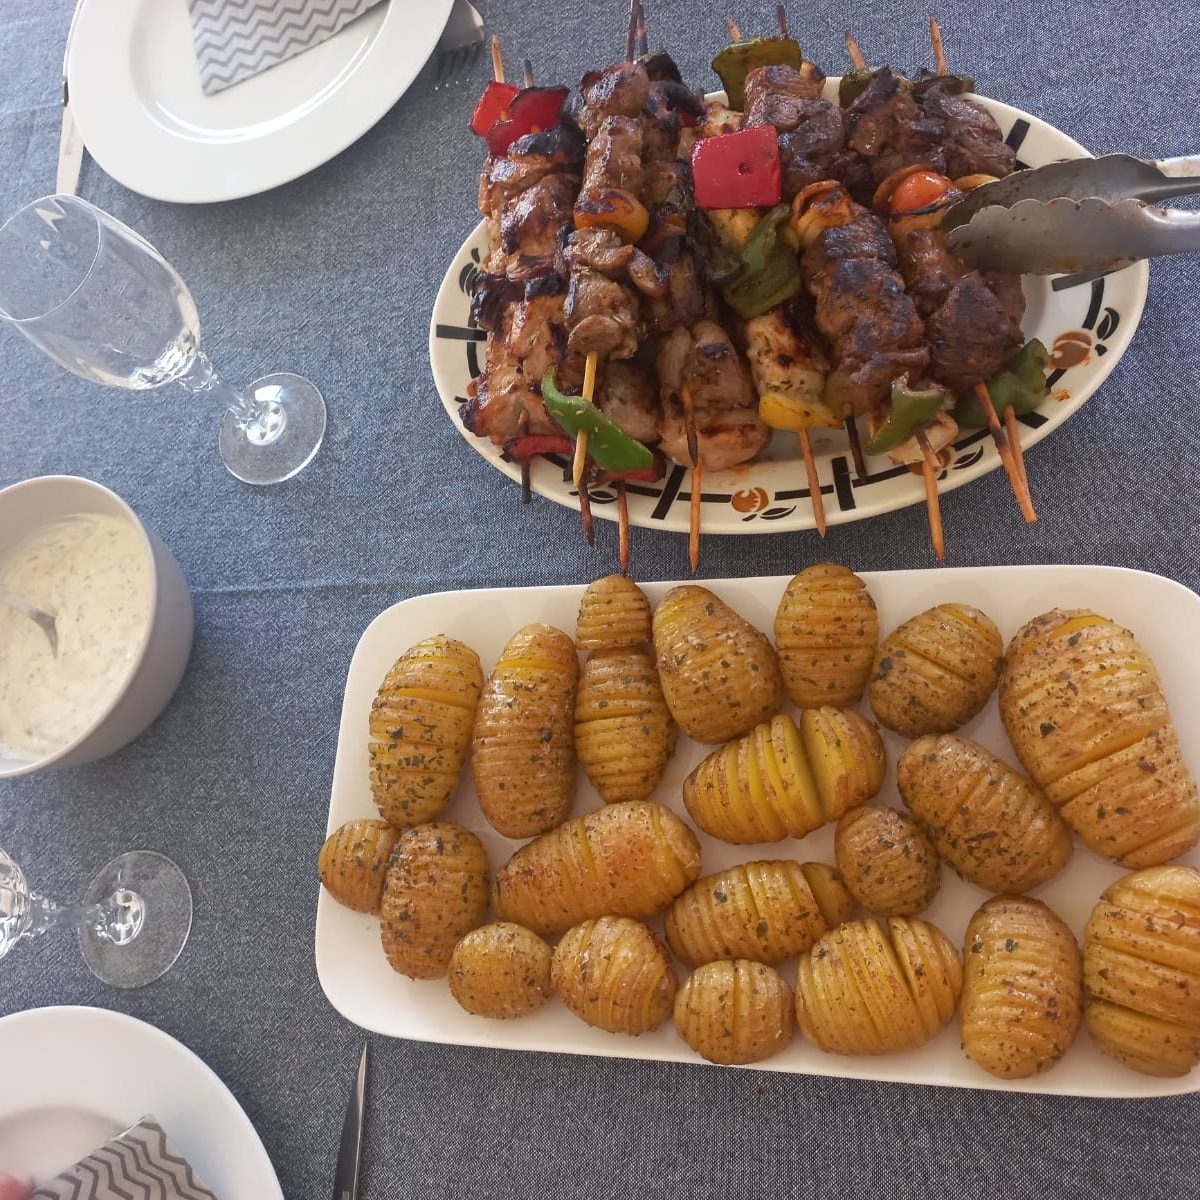 Exemple d'un plat proposé à la table d'hôtes : brochettes et pommes de terre.